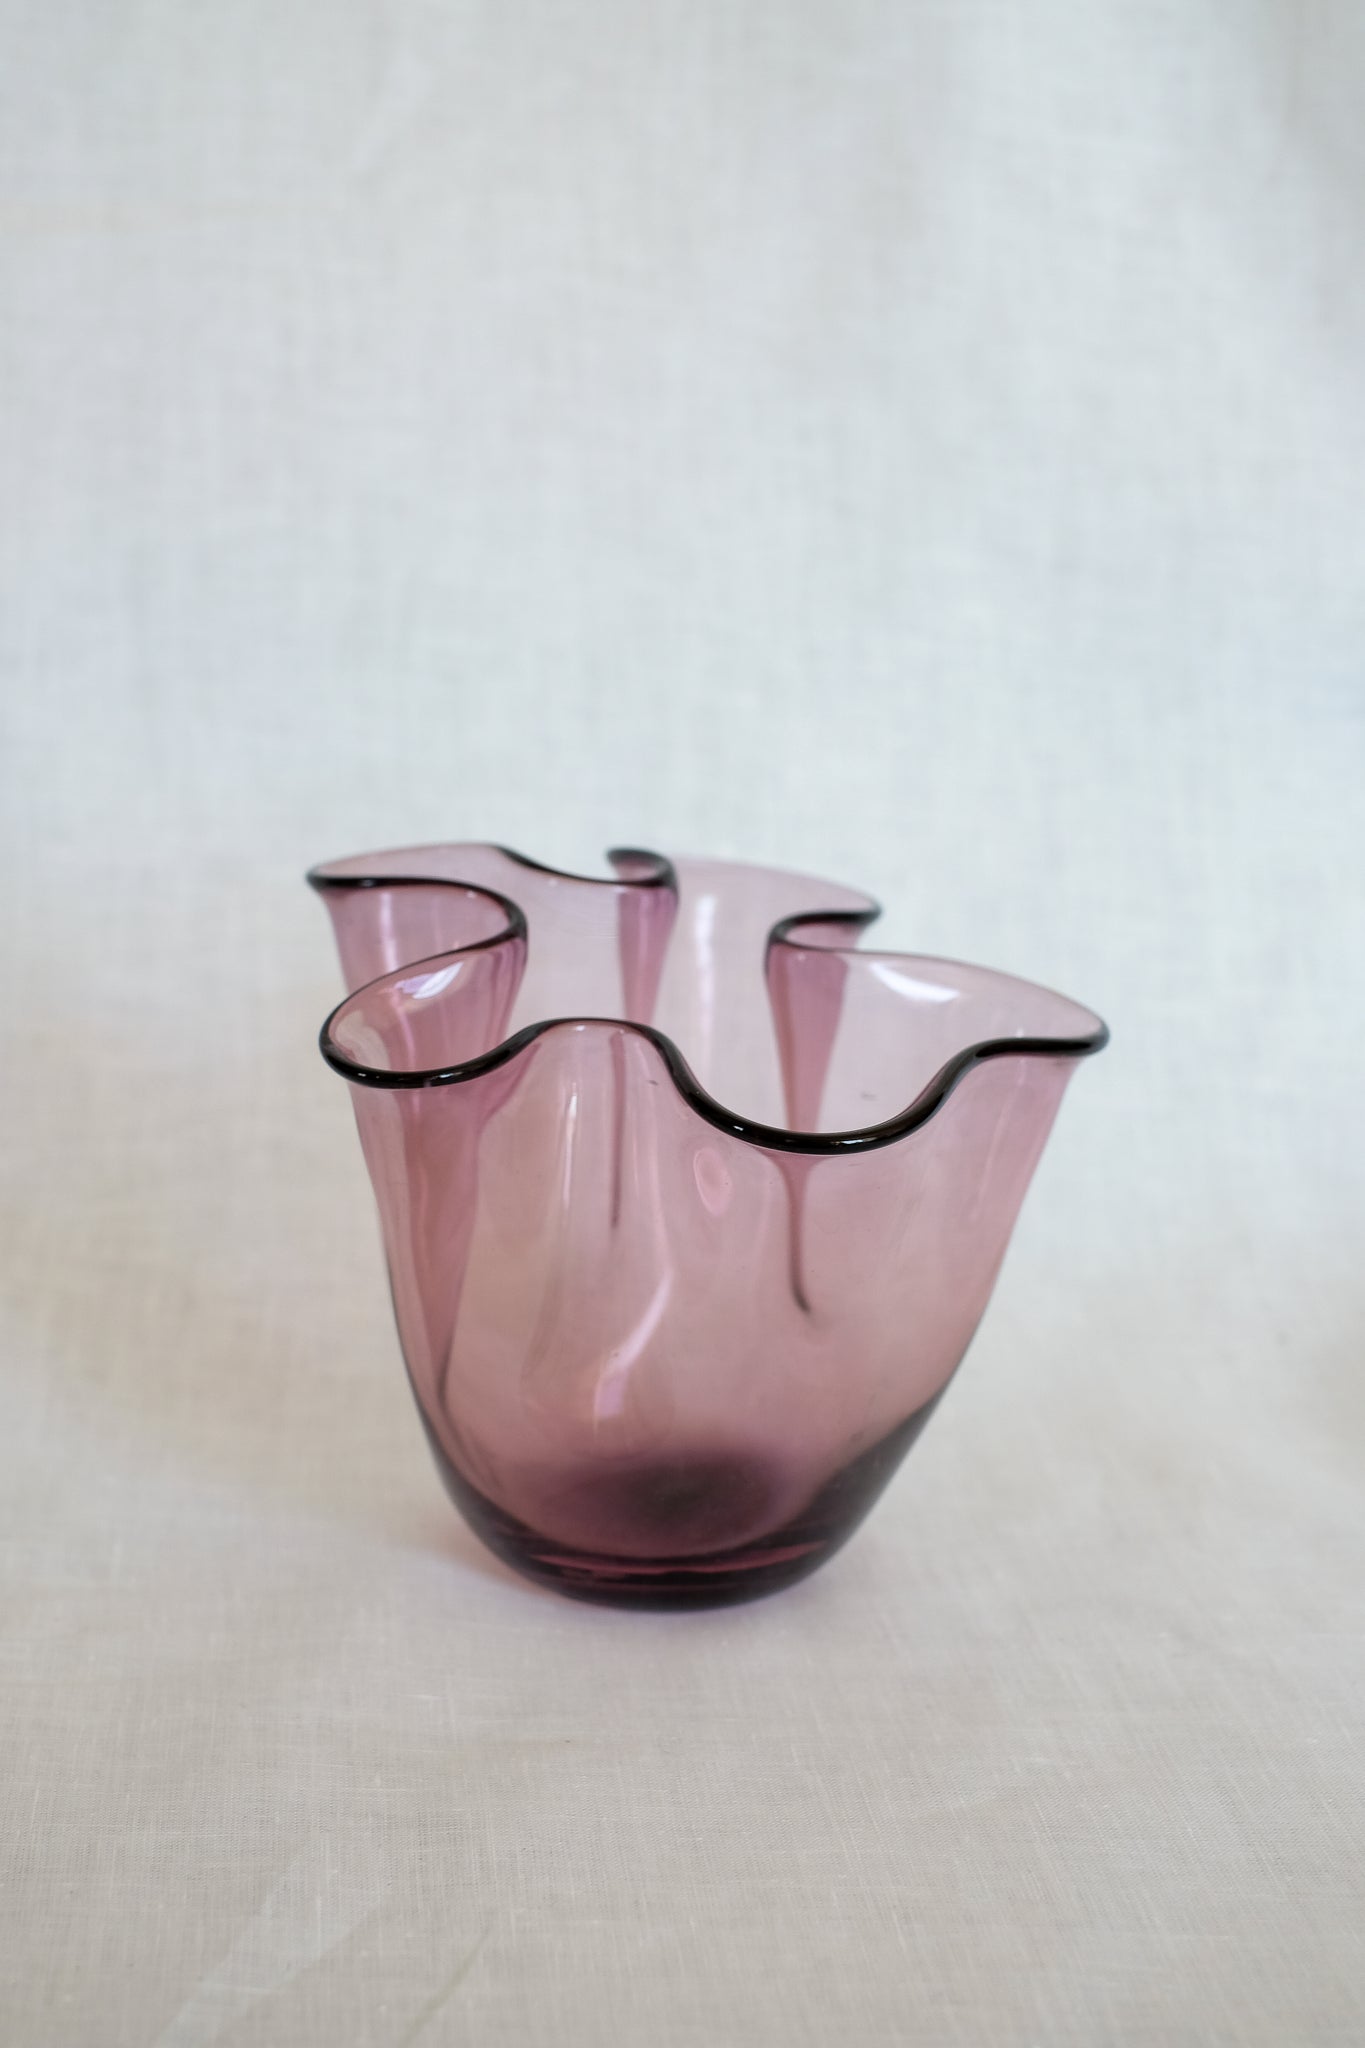 Wavy Glass Vase